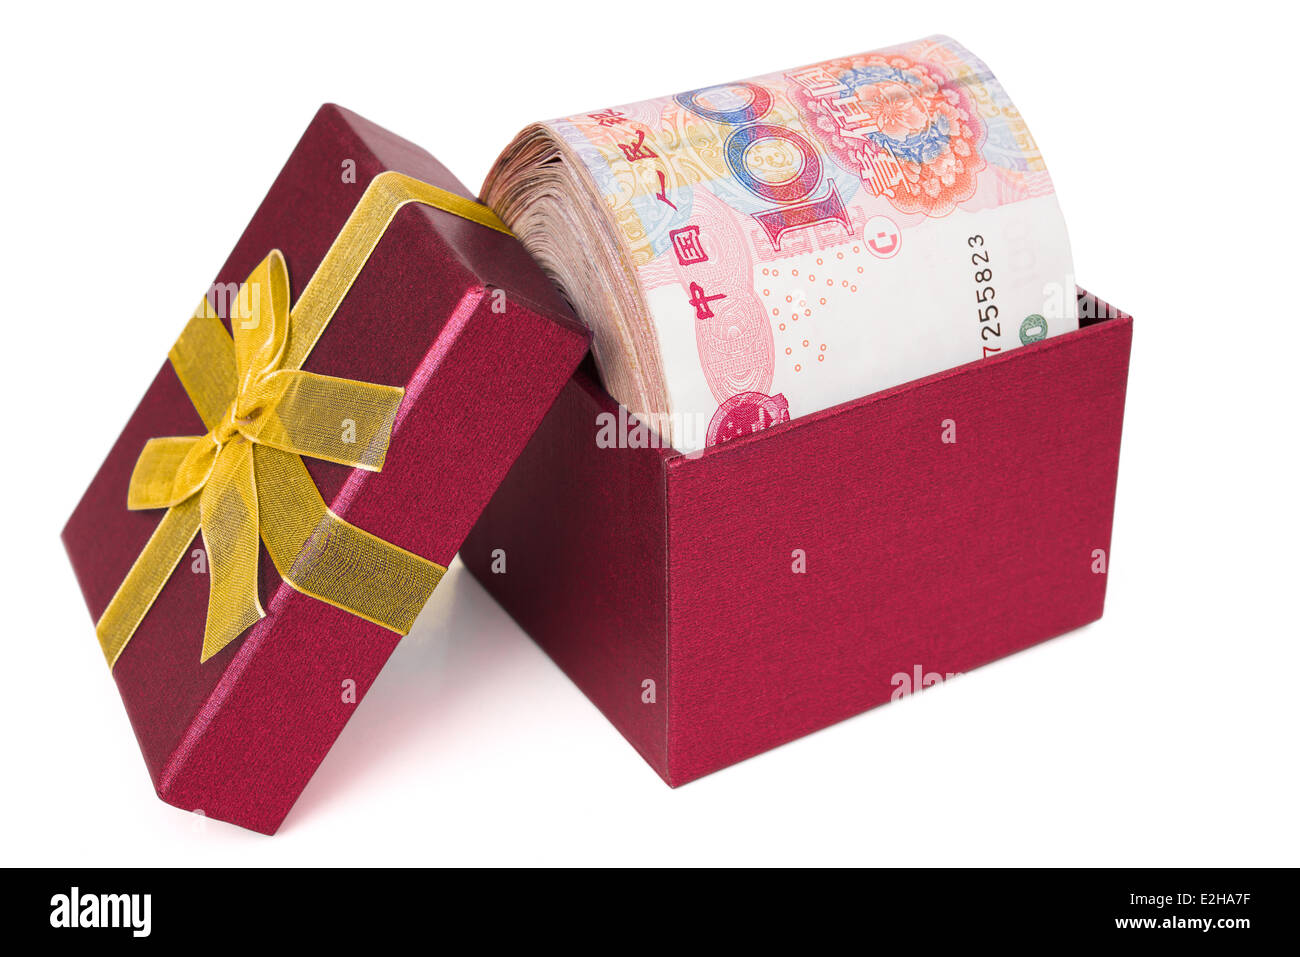 Gros tapis de souris dans une boîte rouge présent with clipping path Banque D'Images